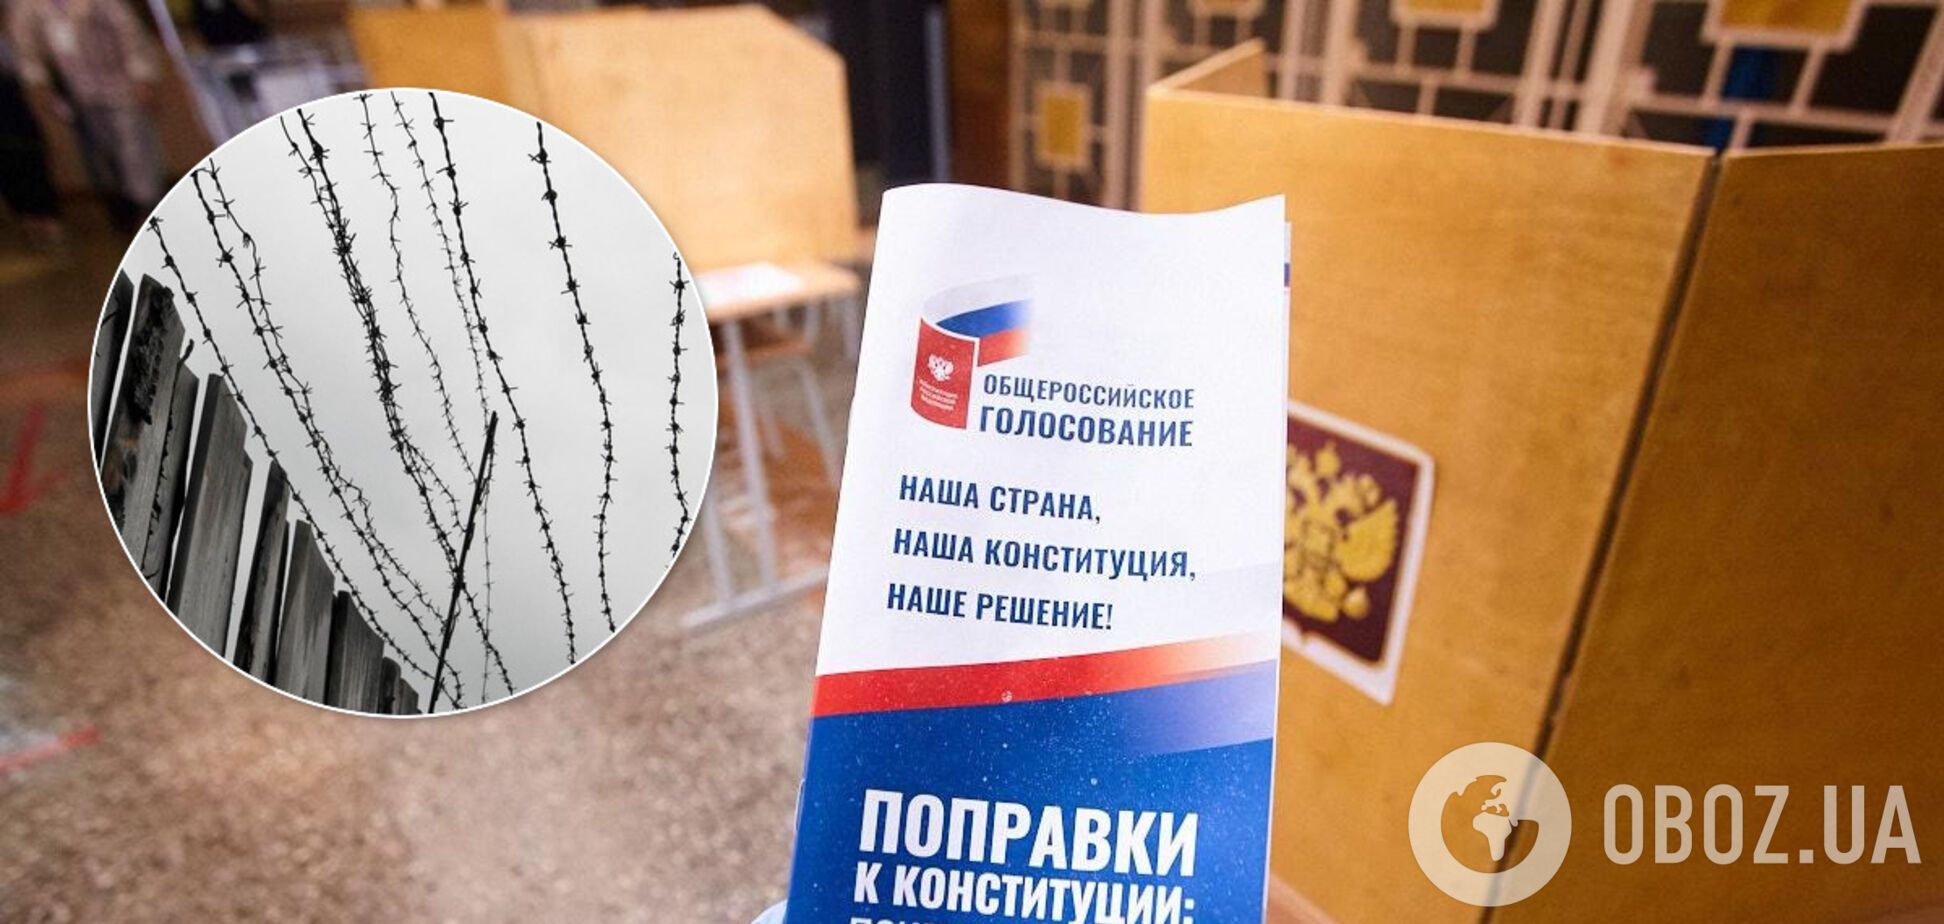 Полонених українців змусили голосувати за поправки до Конституції РФ